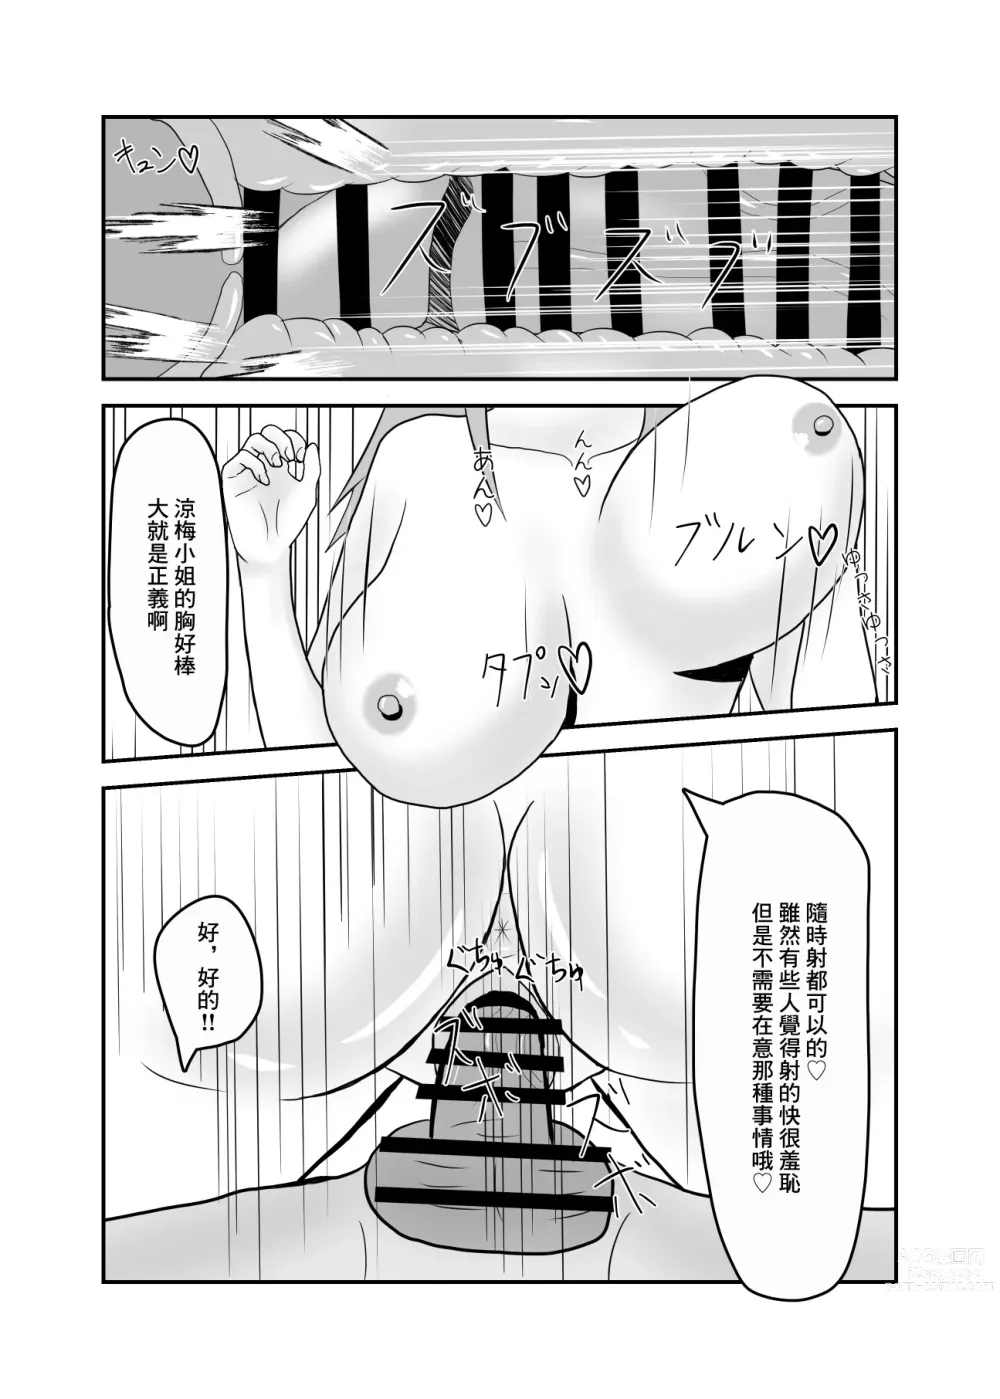 Page 15 of doujinshi 跟附近的淫蕩人妻發展關係了